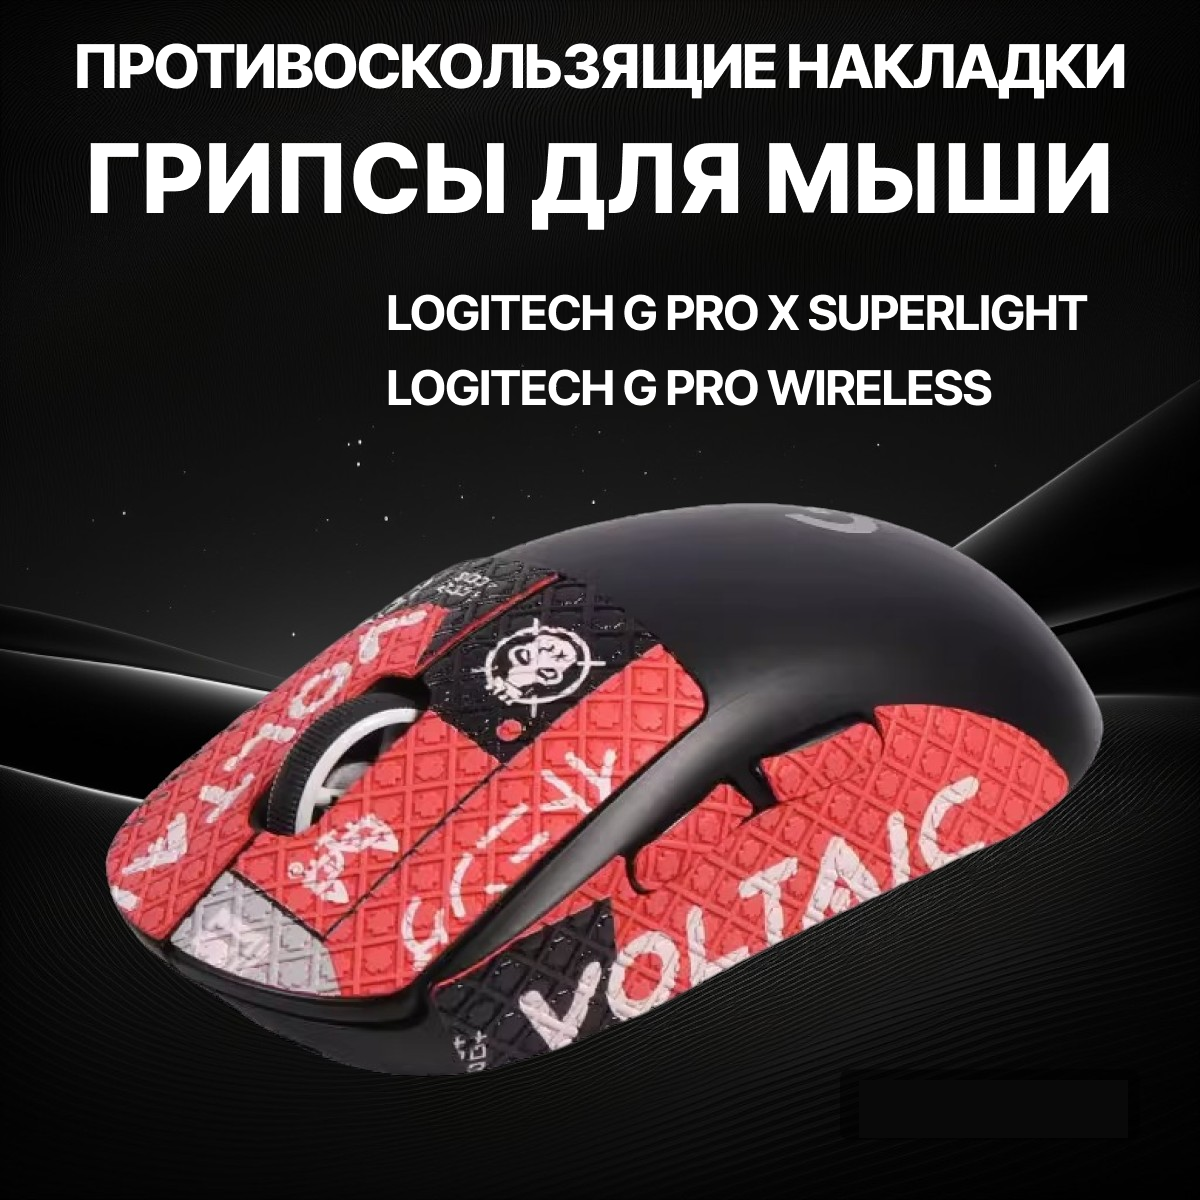 Грипсы для Logitech G Pro X Superlight и G Pro Wireless / Противоскользящие накладки и наклейки для игровой мыши (Поток информации)